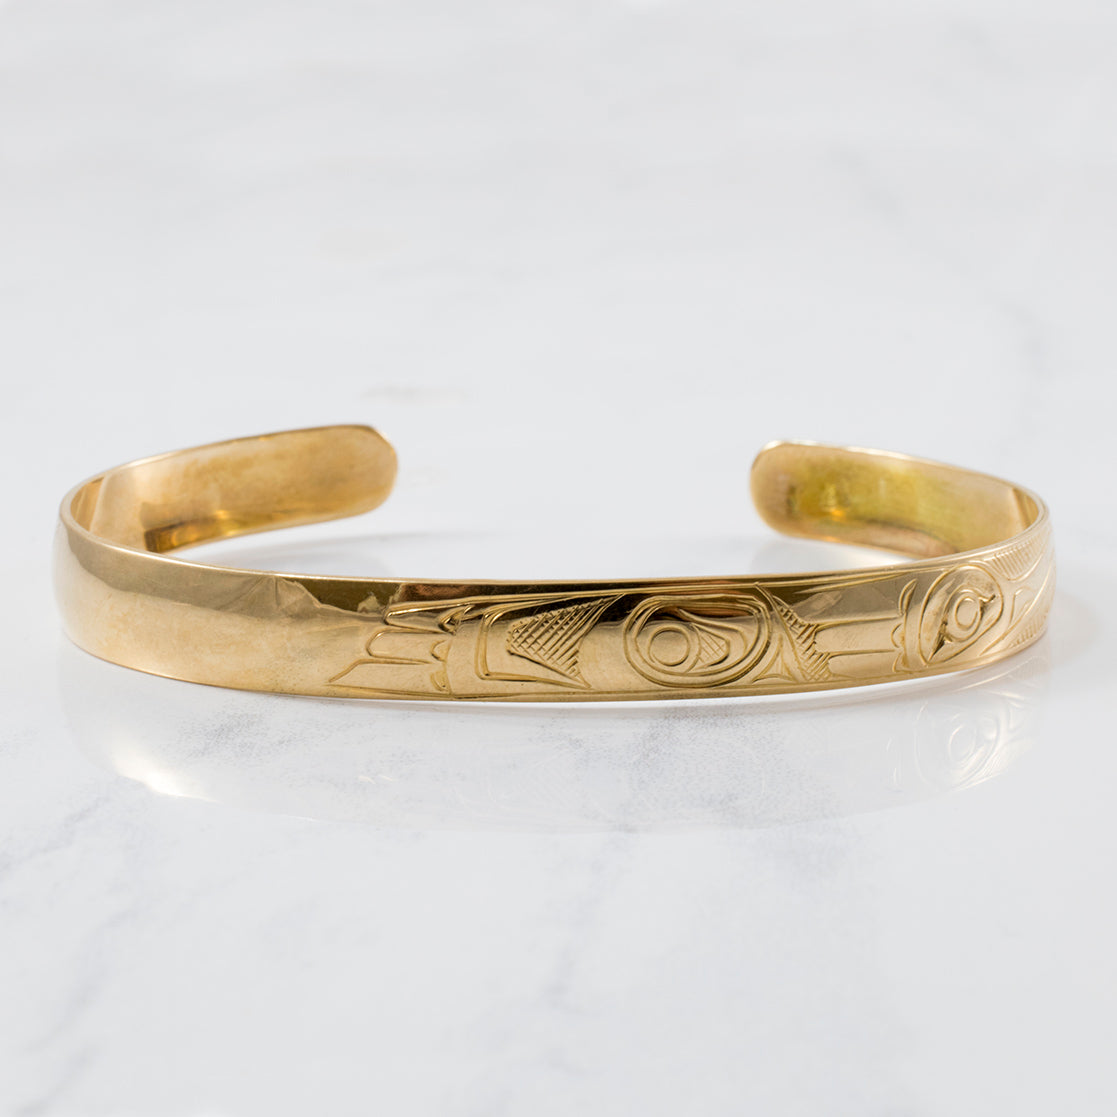 Indigenous Loon Art Gold Cuff Bracelet | SZ 6